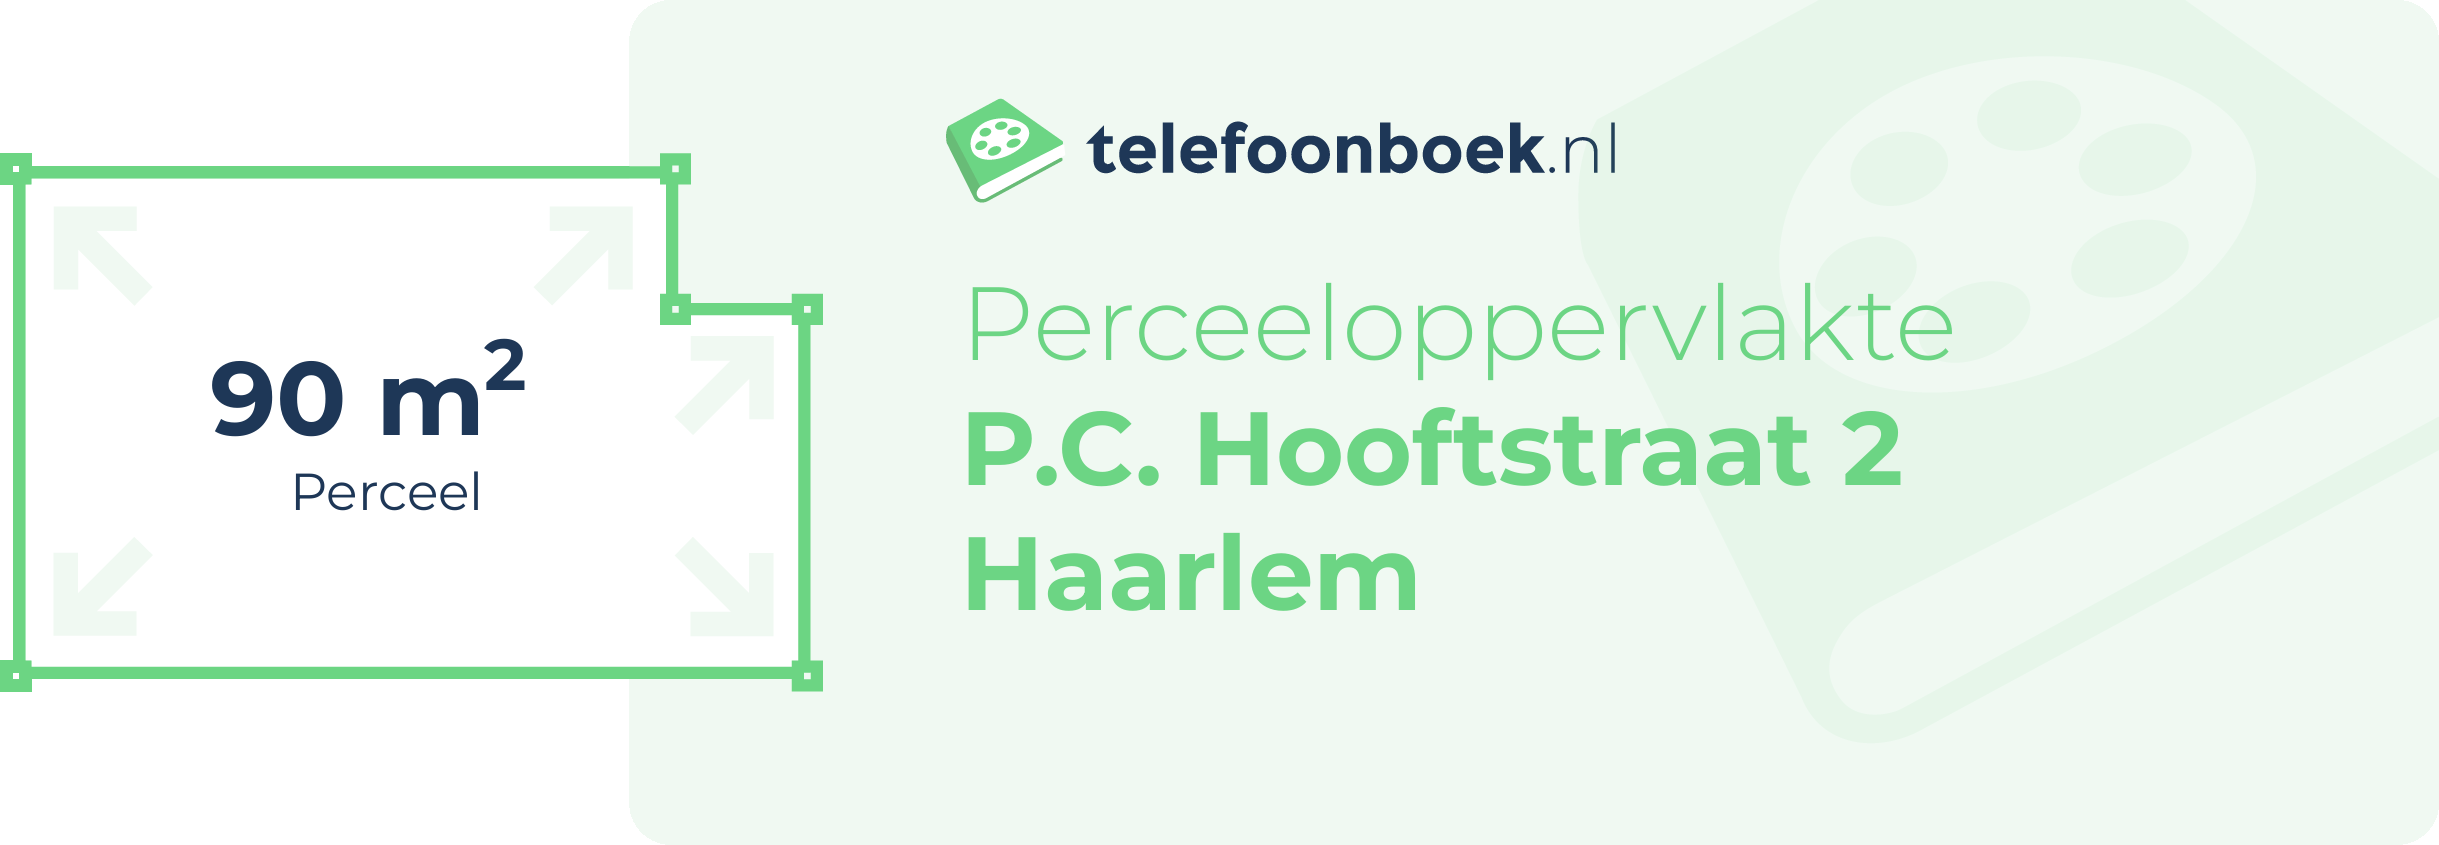 Perceeloppervlakte P.C. Hooftstraat 2 Haarlem